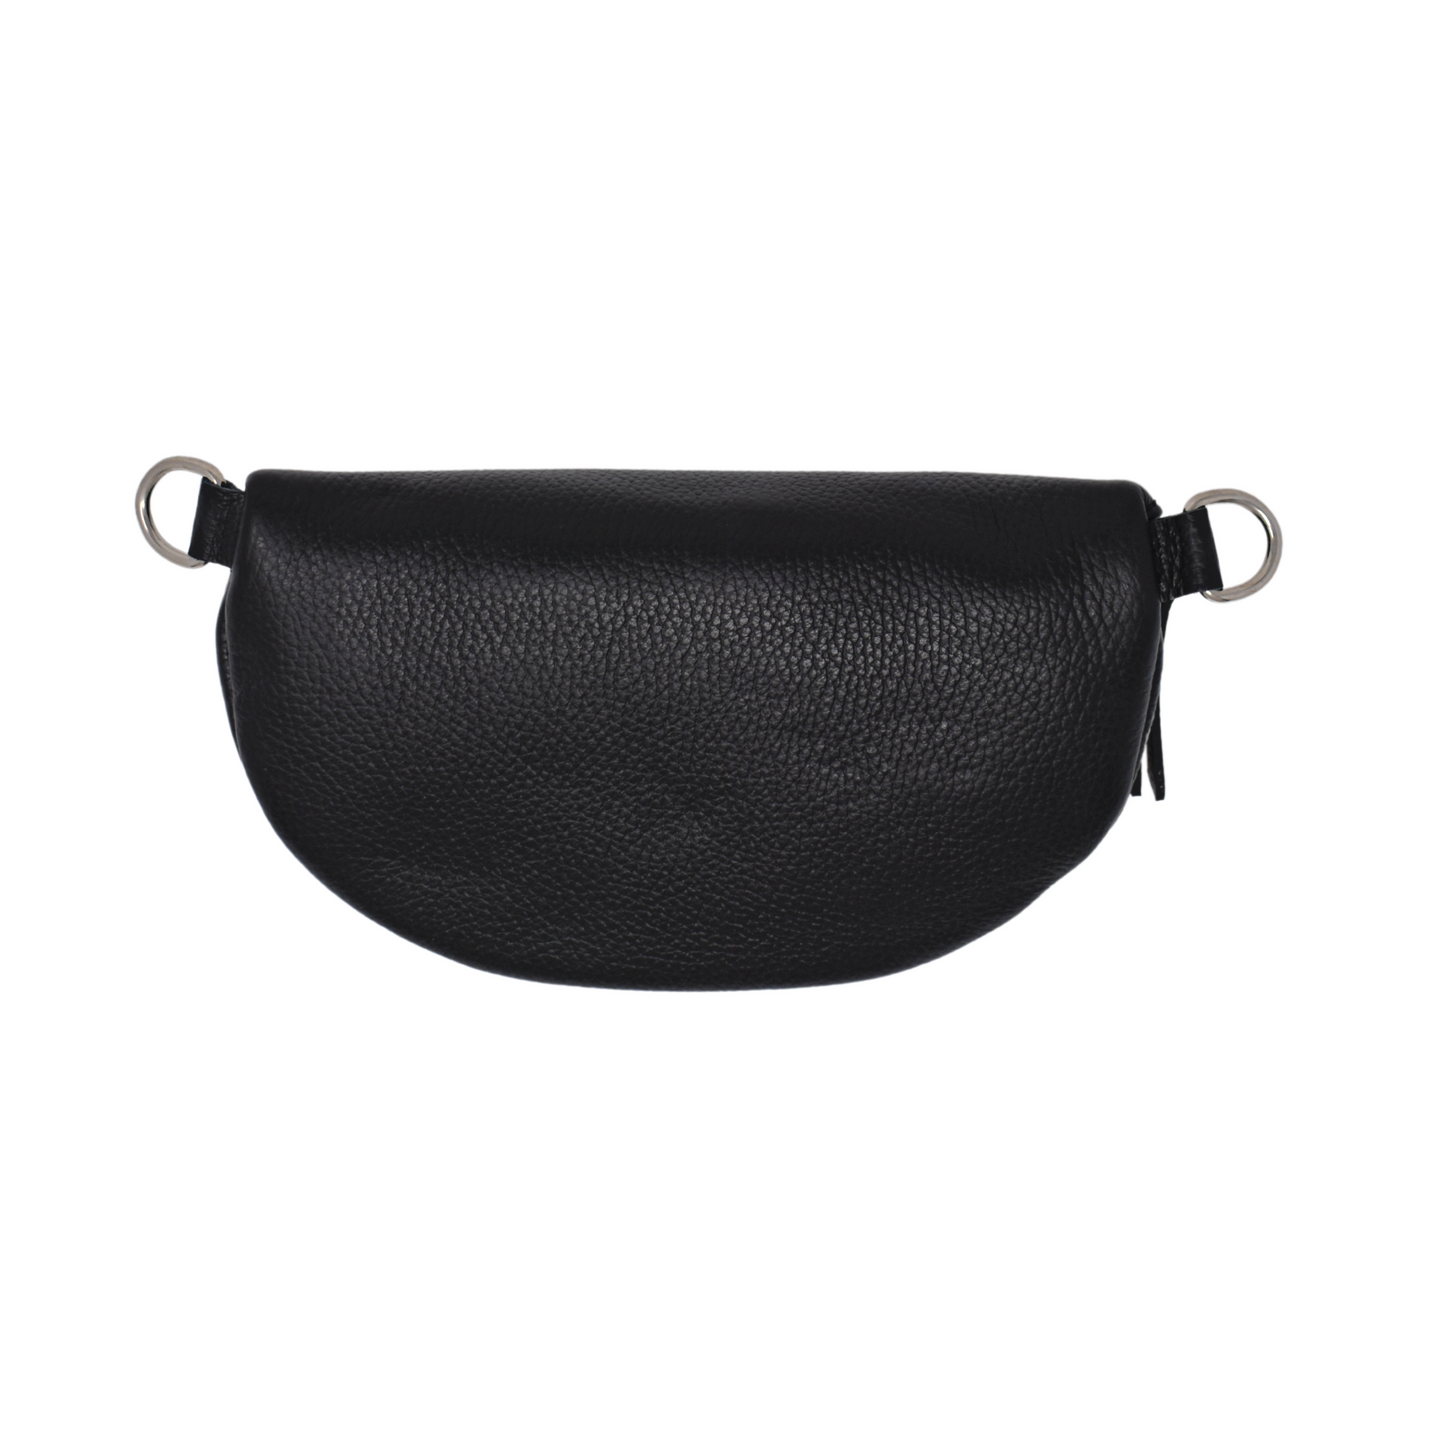 The Lucca Belt Bag